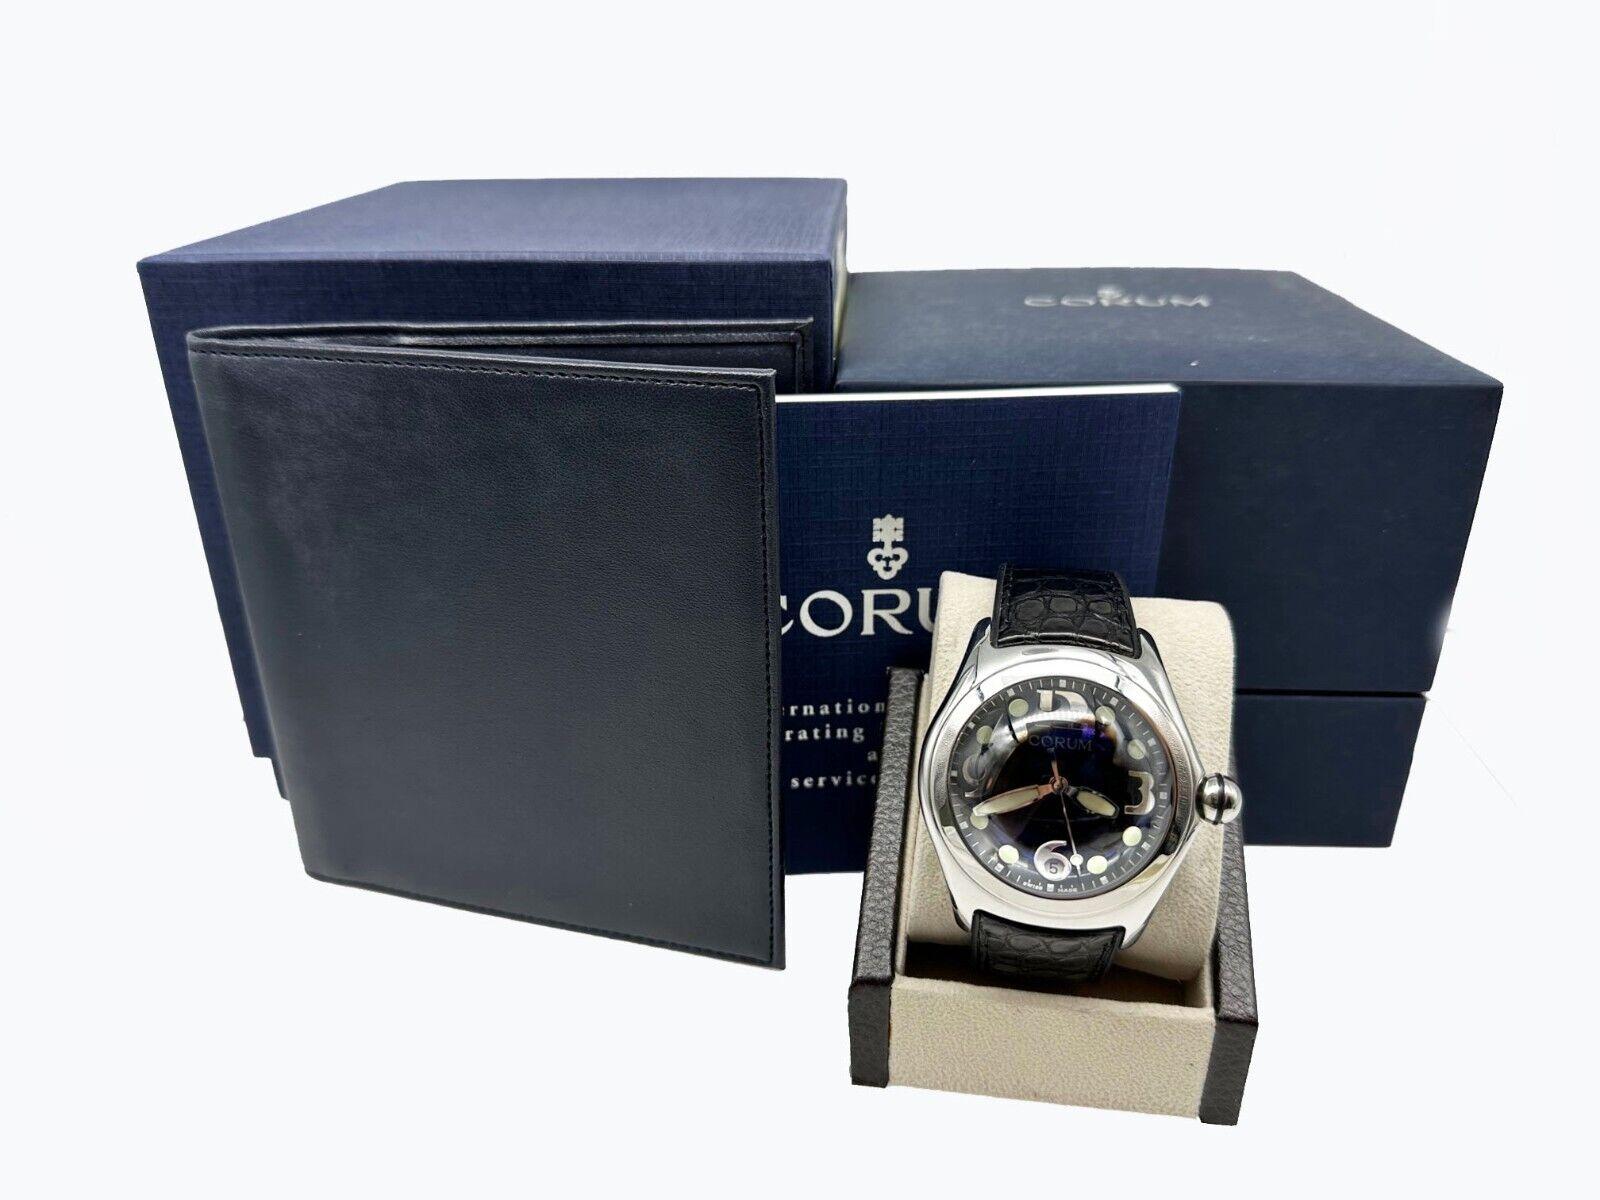 corum boutique watch